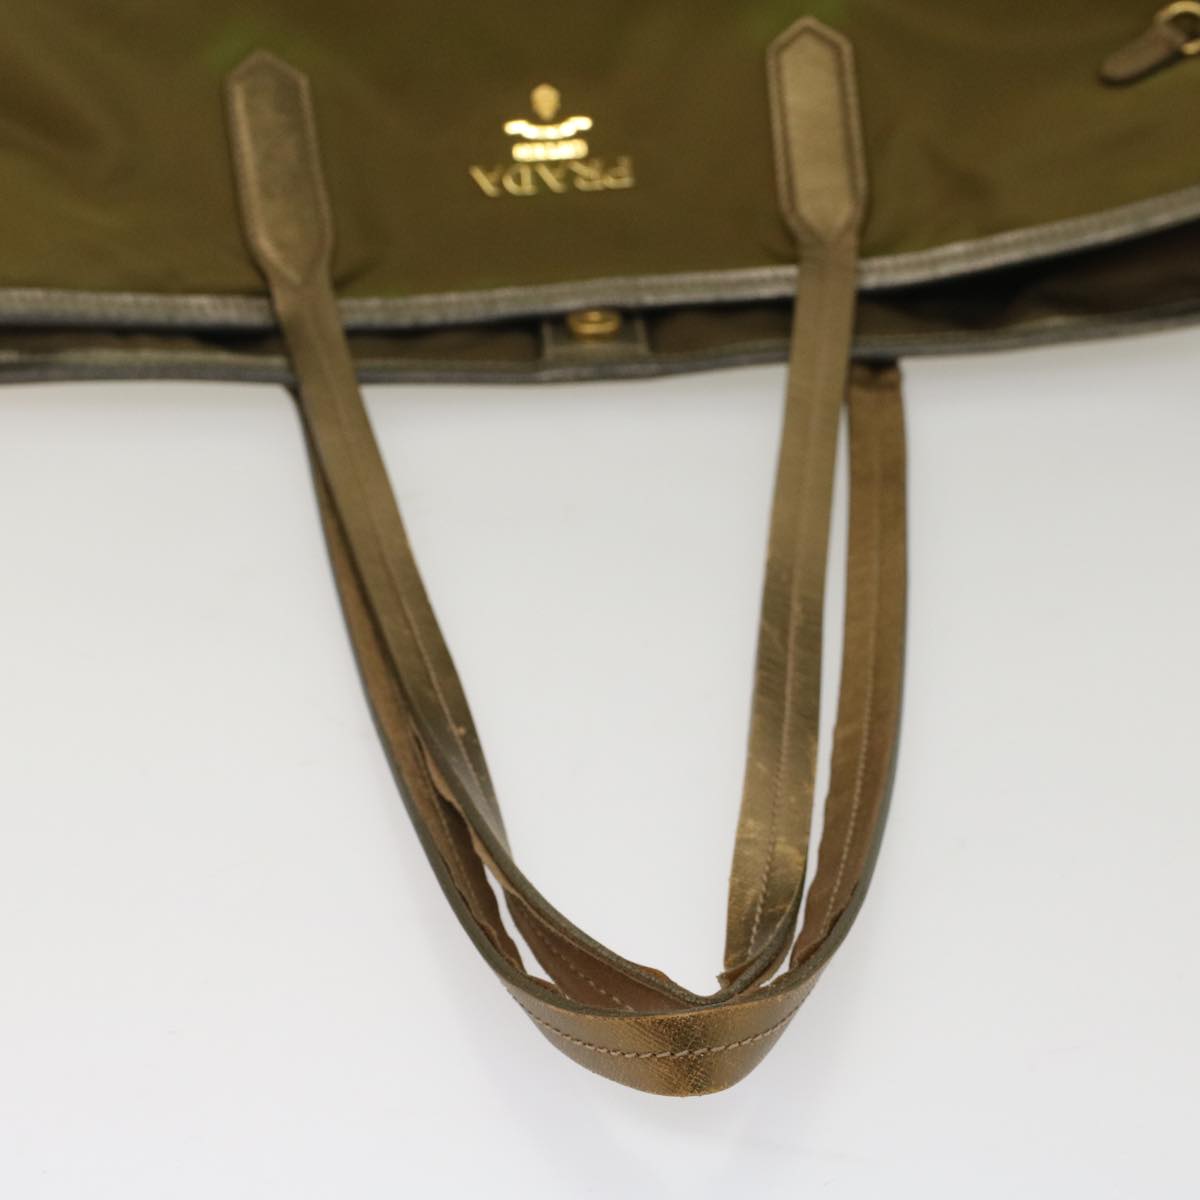 PRADA Tote Bag Nylon Leather Khaki Auth hk813